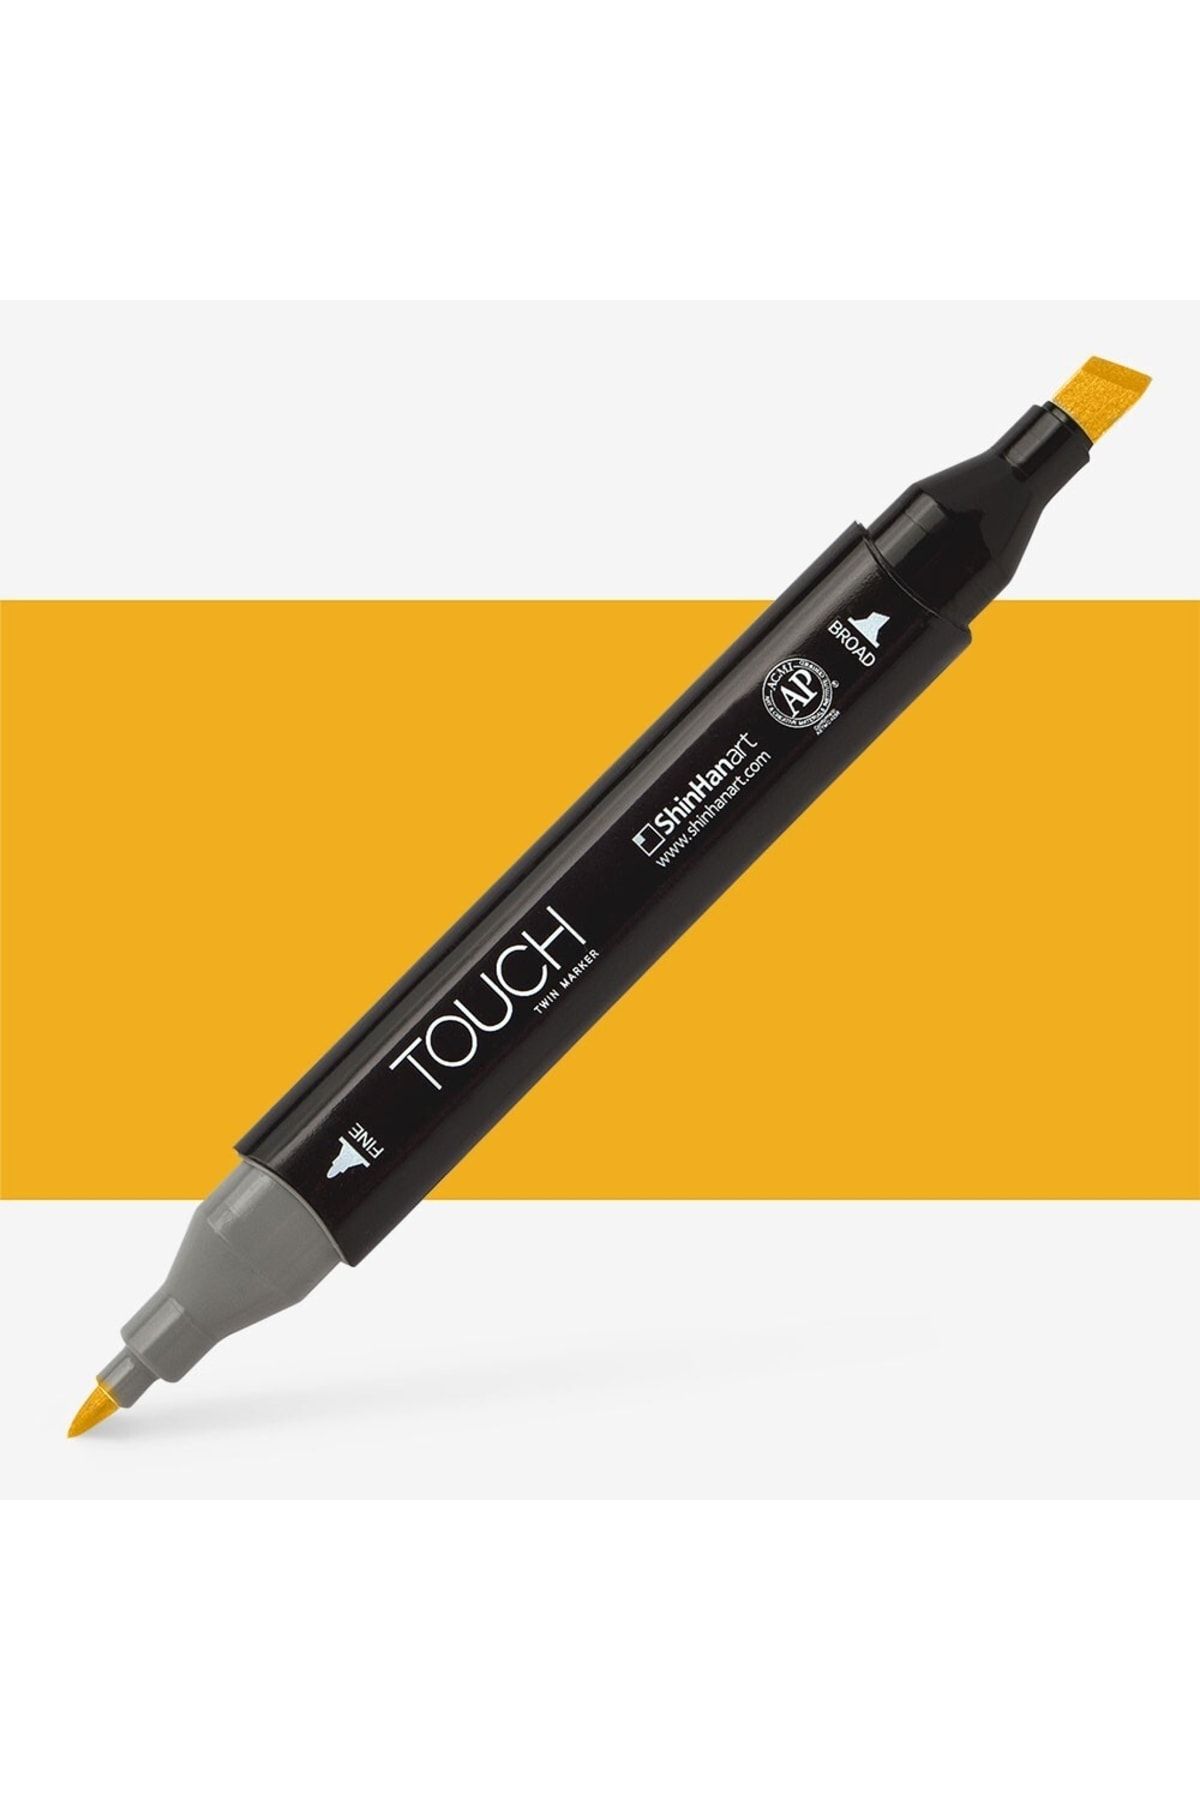 Shinhan Art Touch Twin Marker Pen : Çift Uçlu Marker Kalemi : Dark Yellow : Yr31